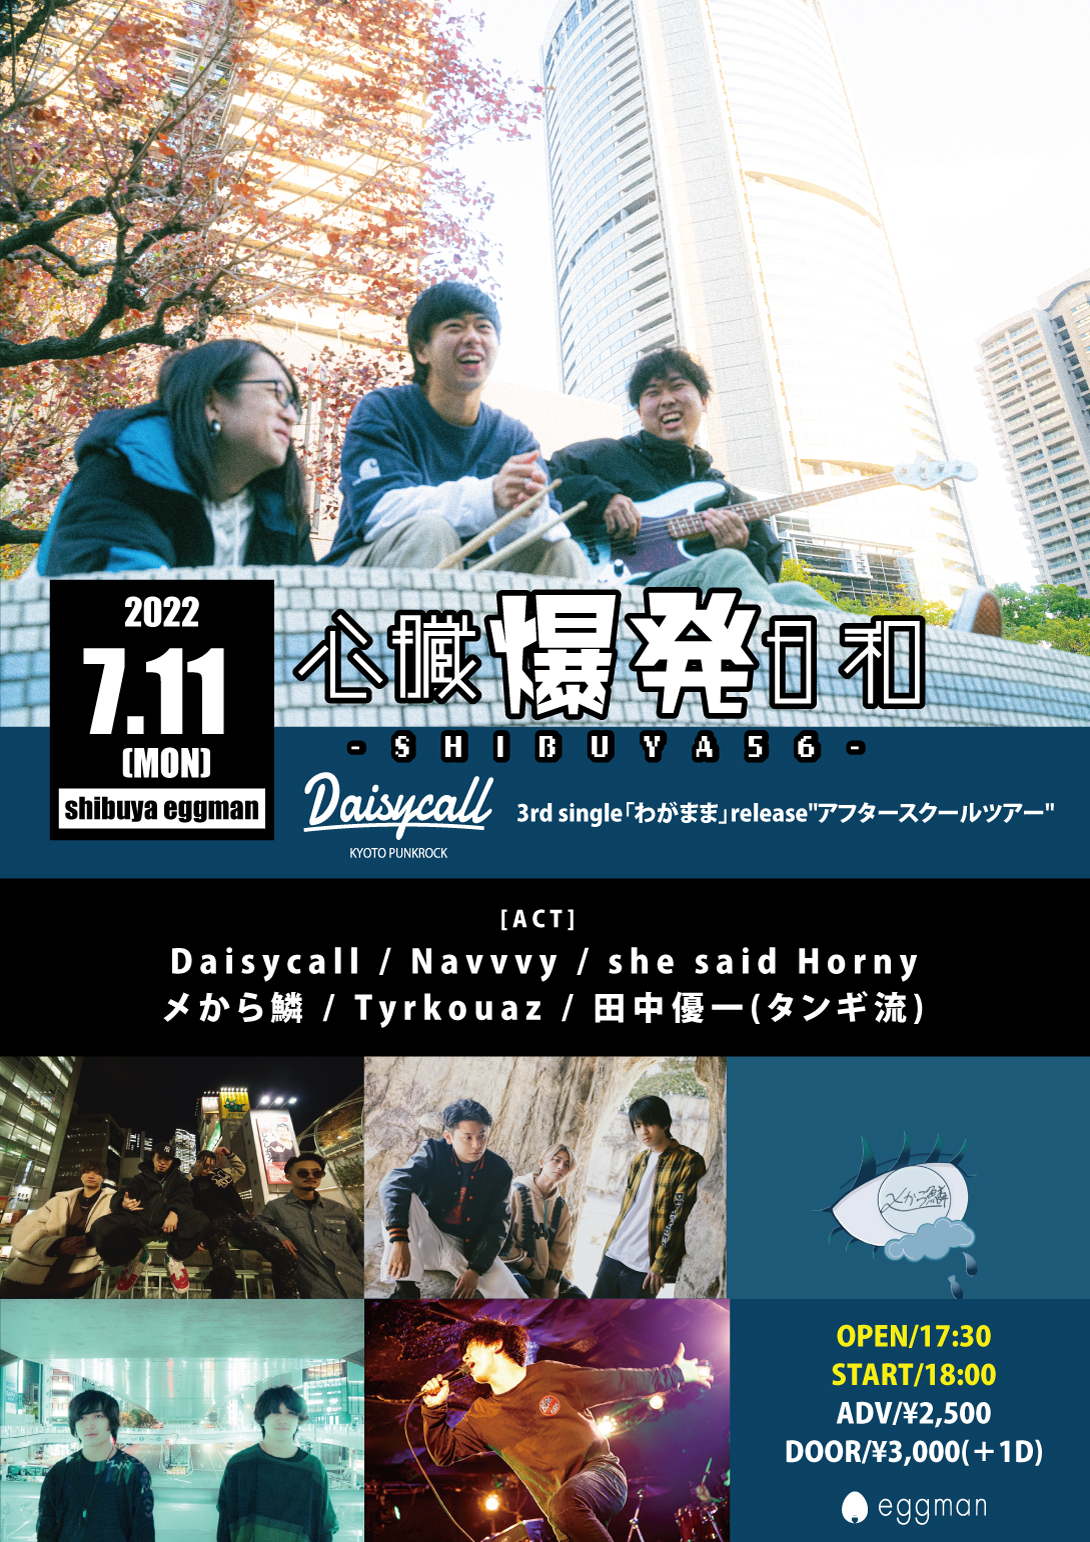 心臓爆発日和-SHIBUYA56-  〜Daisycall 3rd single「わがまま」release”アフタースクールツアー”ー